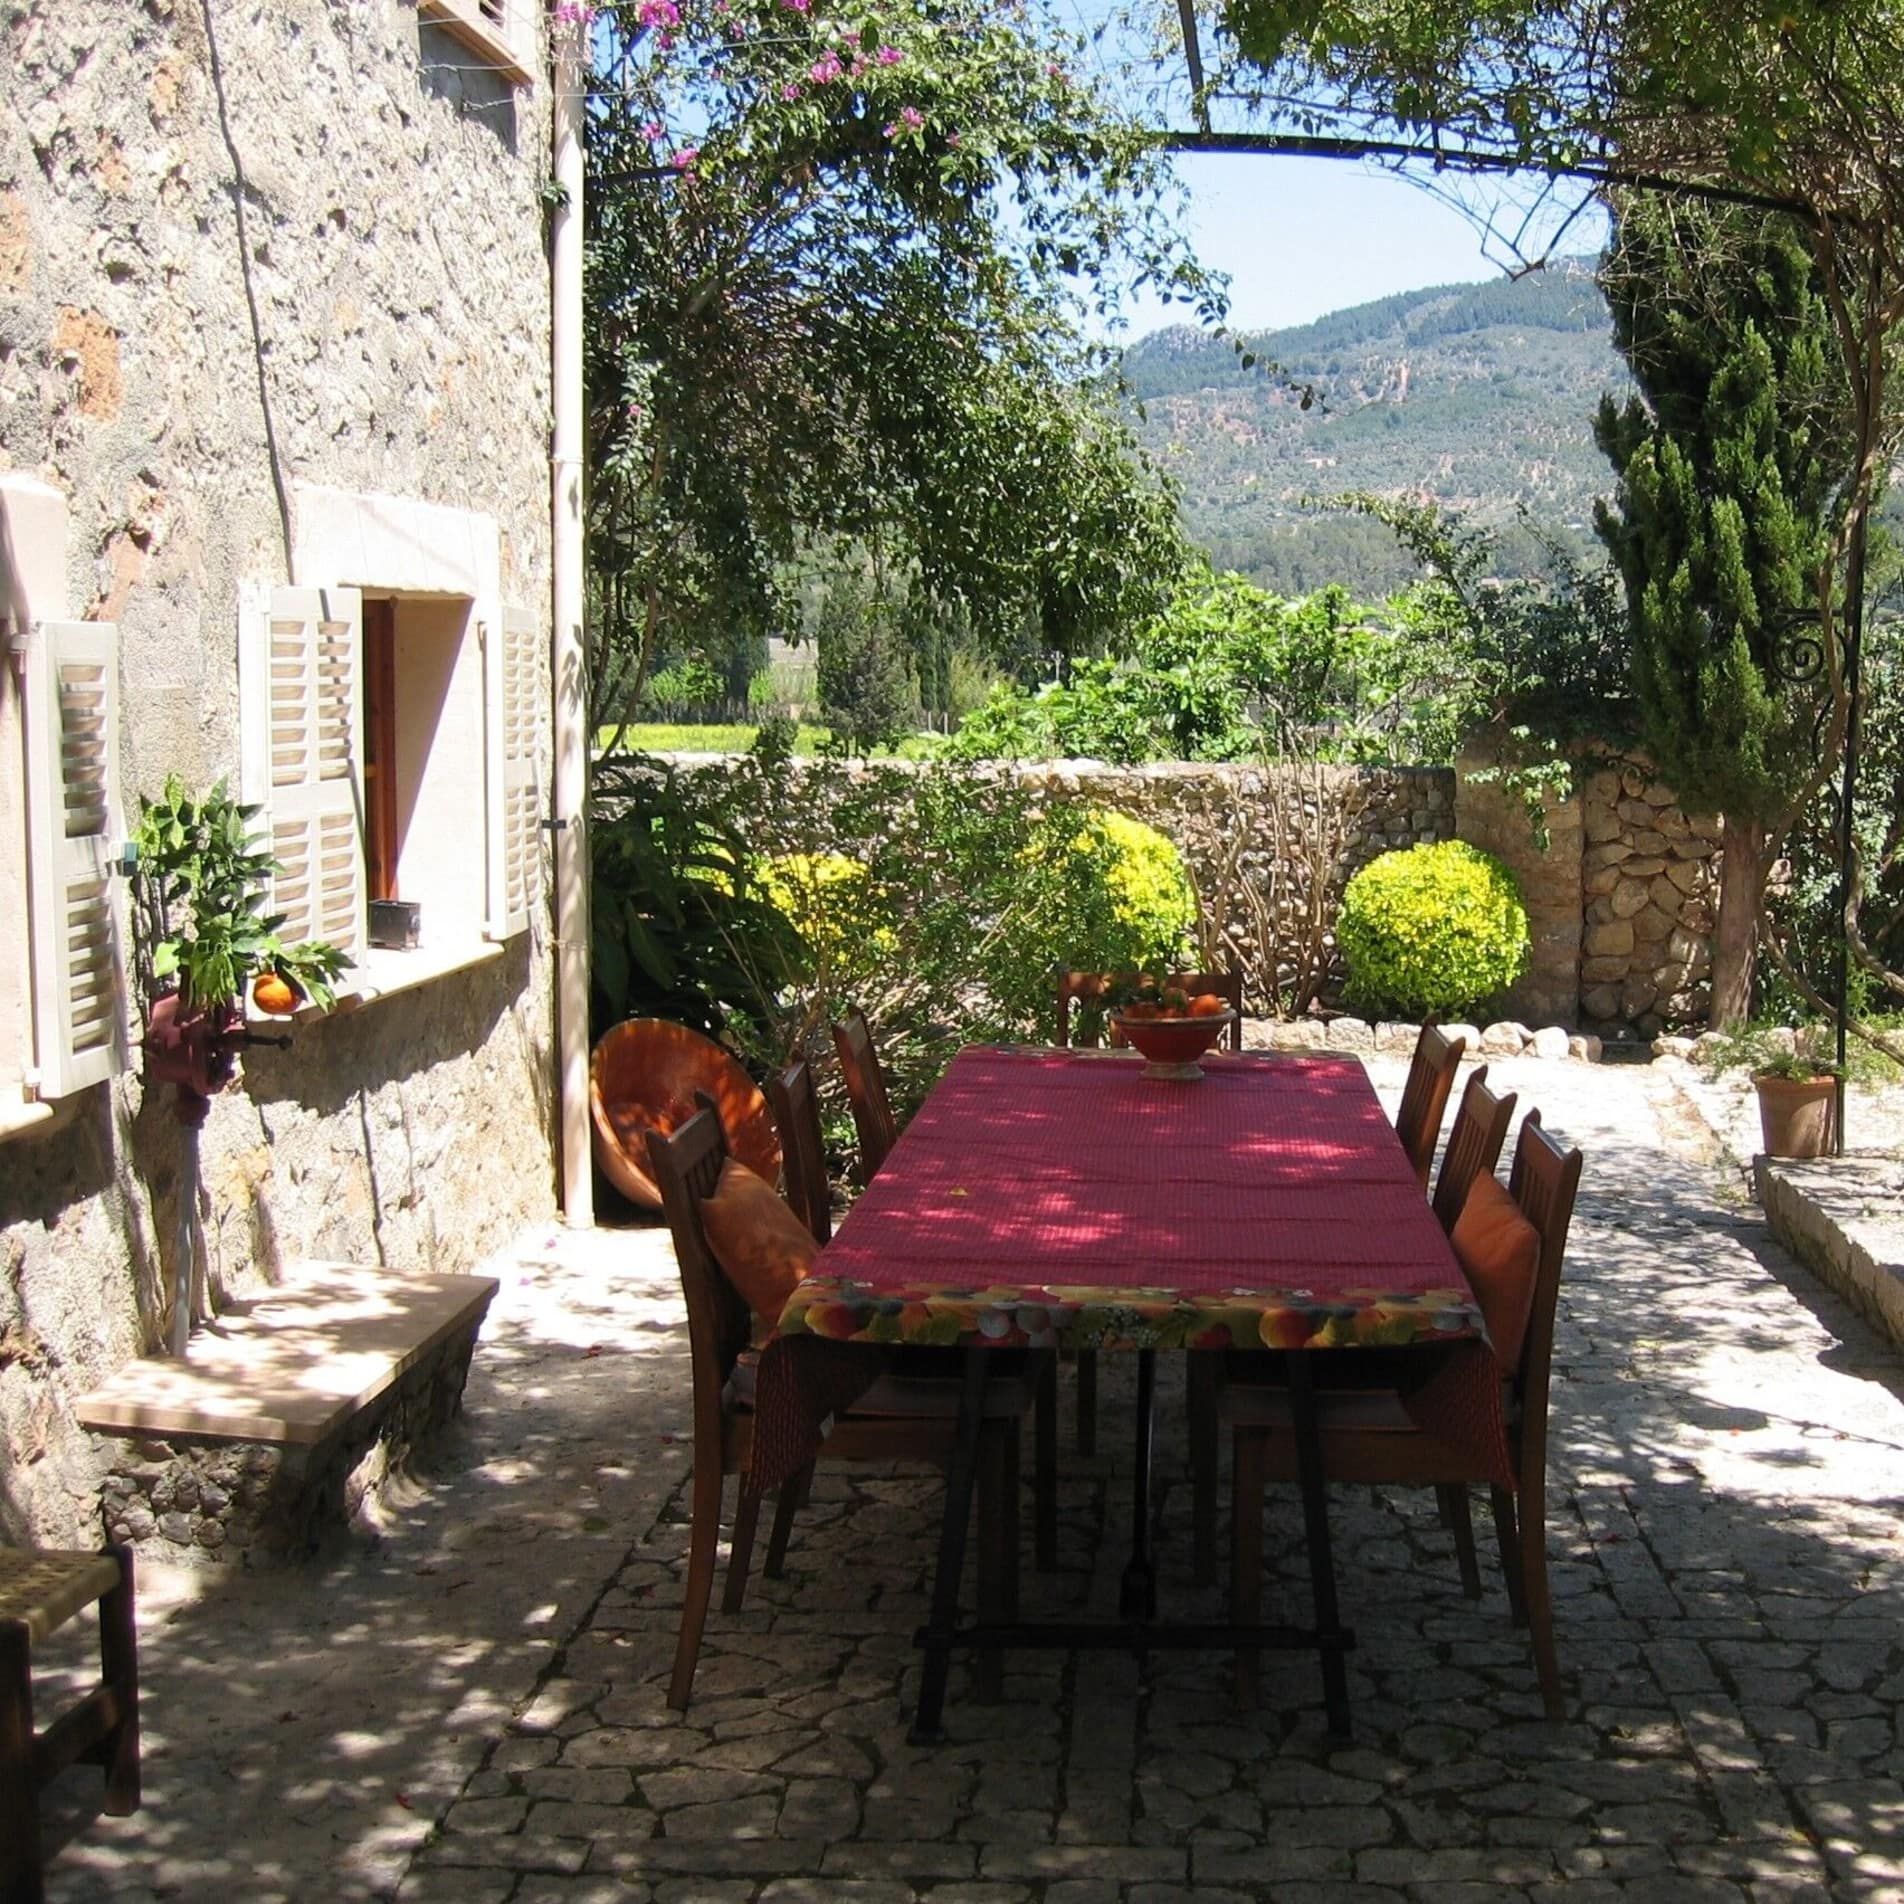 Esstisch und Stühle auf der großräumigen Terrasse mit Bergblick des ländlichen Ferienhauses auf Mallorca